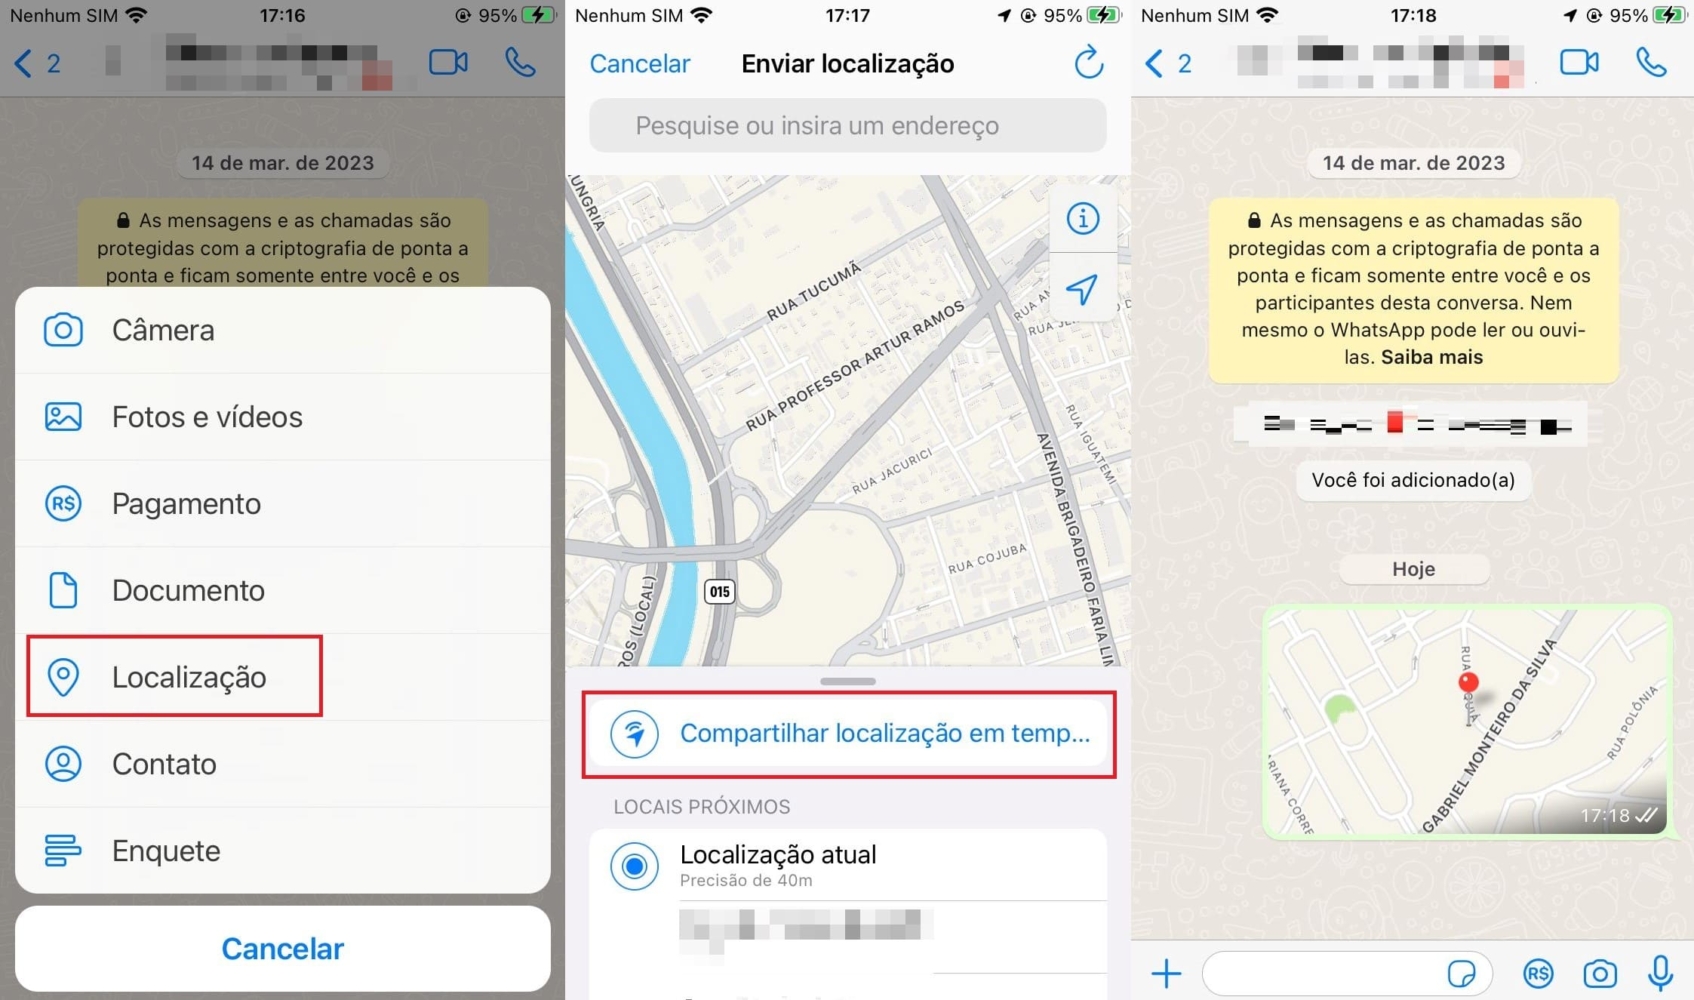 Imagem com o passo a passo para compartilhar localização do Whatsapp no iPhone